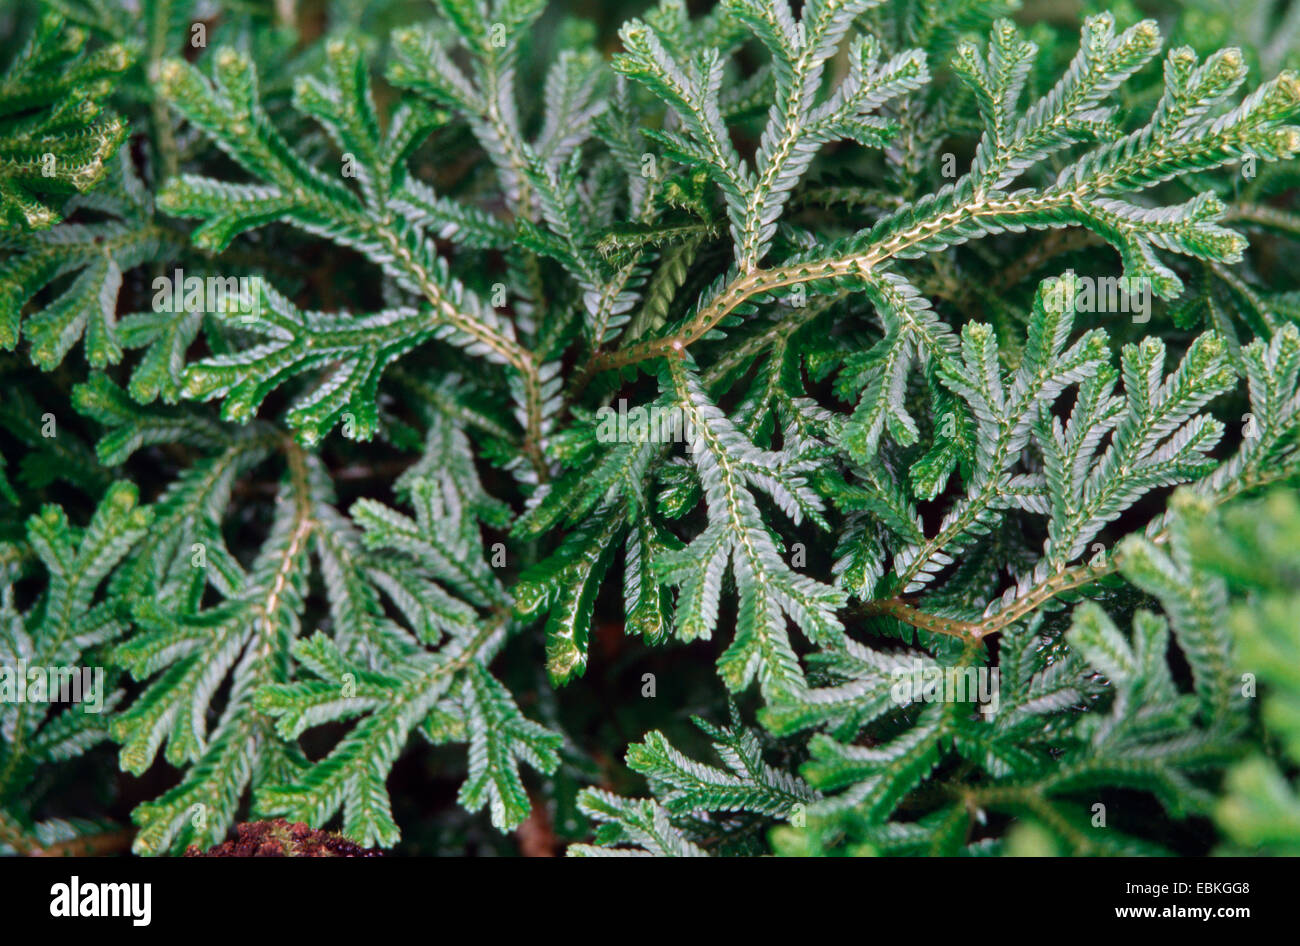 Spike Moss, Spikemoss, Creeping Moss, Selaginella convoluta (Selaginella convoluta), branchlets Stock Photo